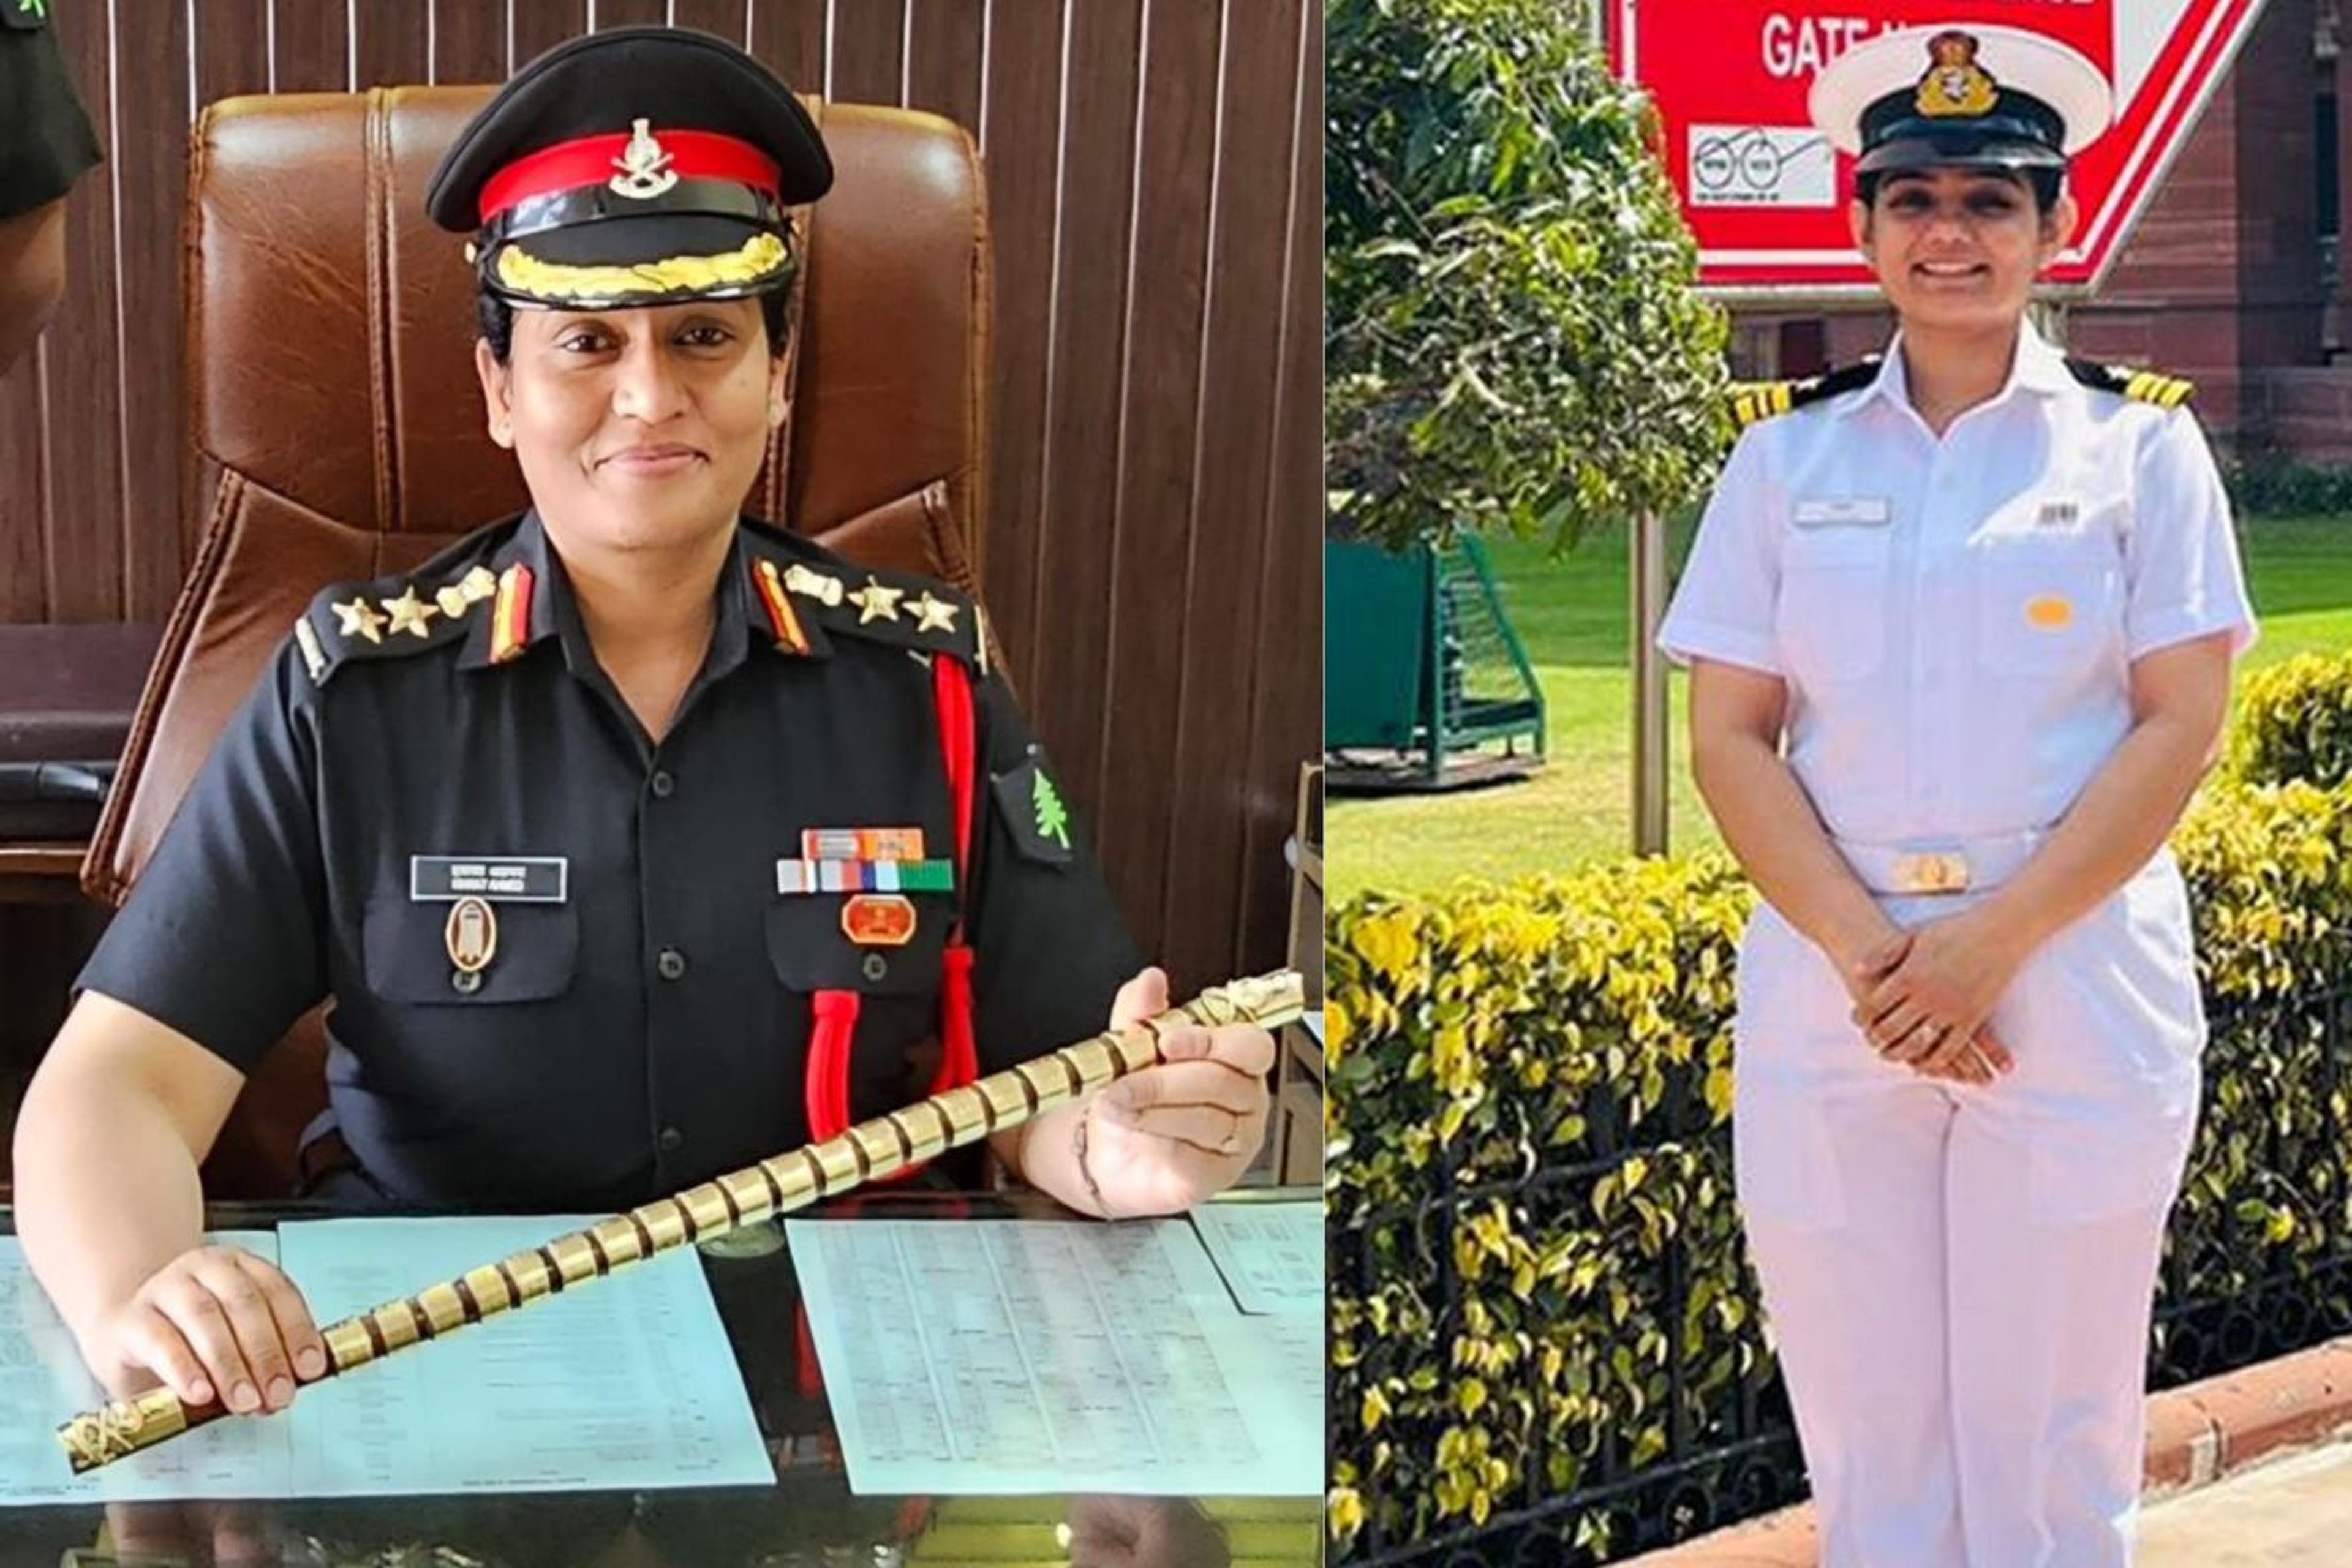 राजस्थान की पहली मुस्लिम बेटी कर्नल पद पर पहुंचकर संभालेगी आरडनेंस आर्मी यूनिट
कमांड, परिवार के कई सदस्य सेना में